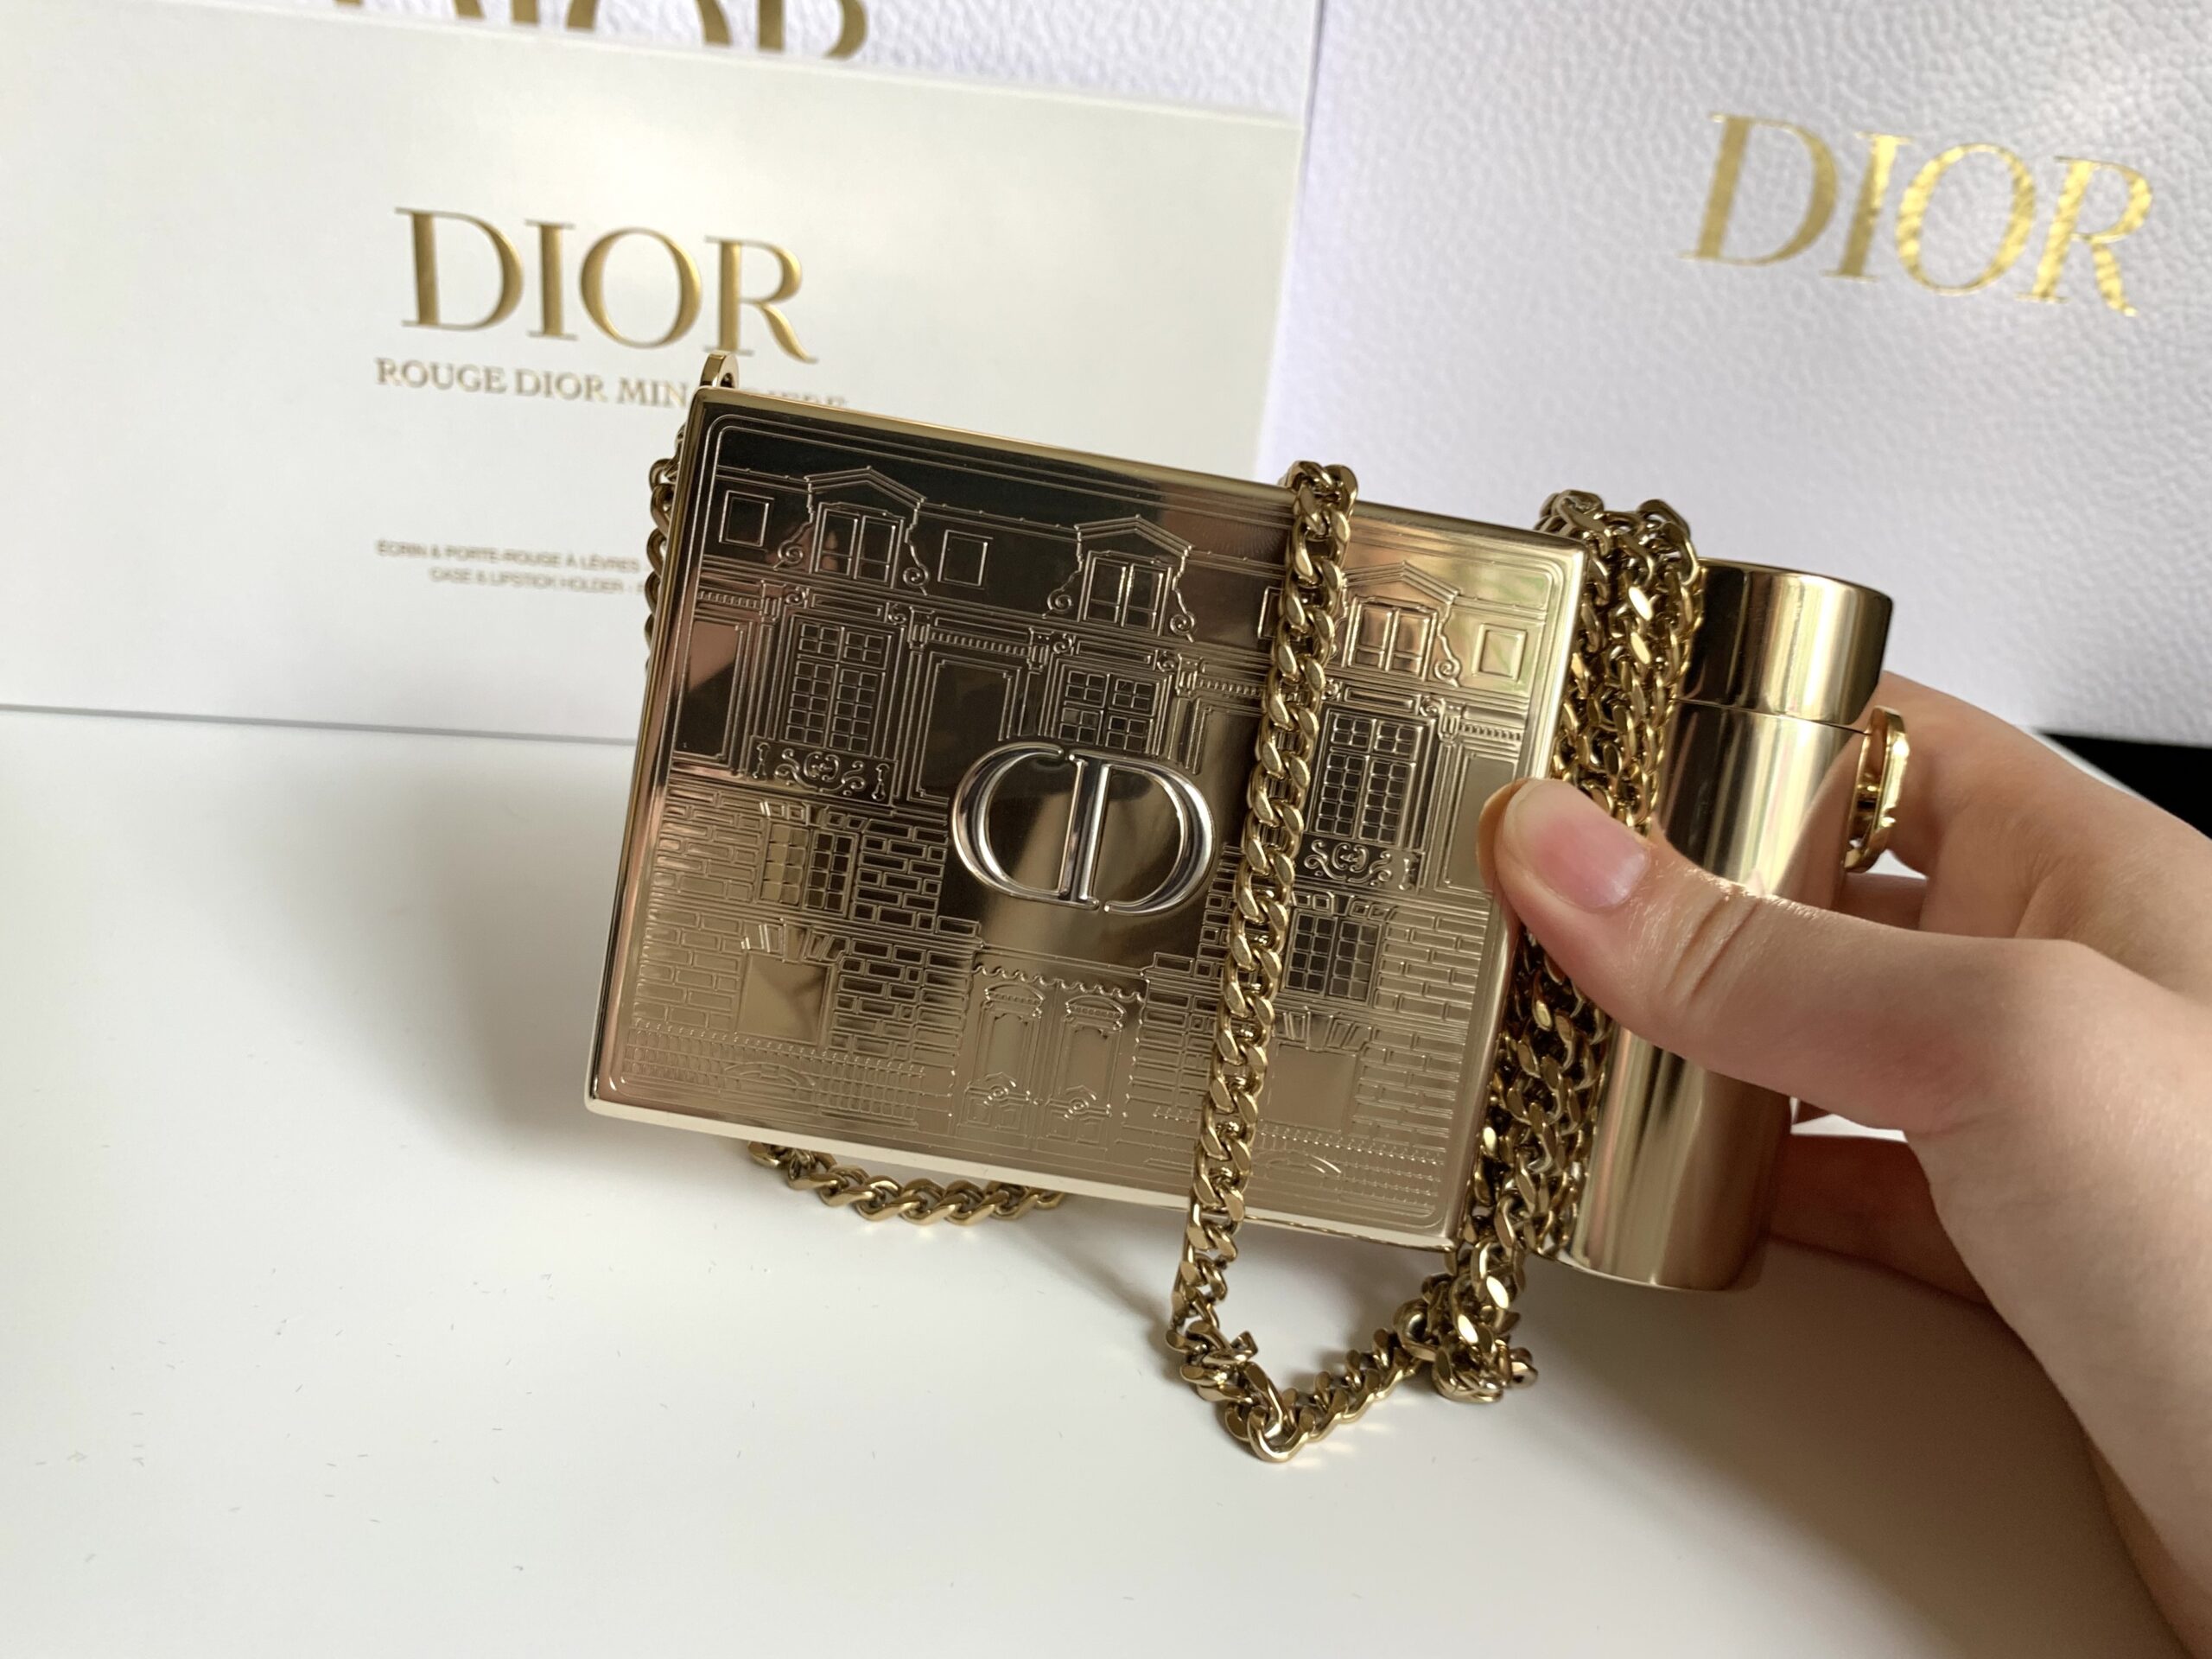 Dior ルージュディオールミノディエール ホリデー限定品 www 